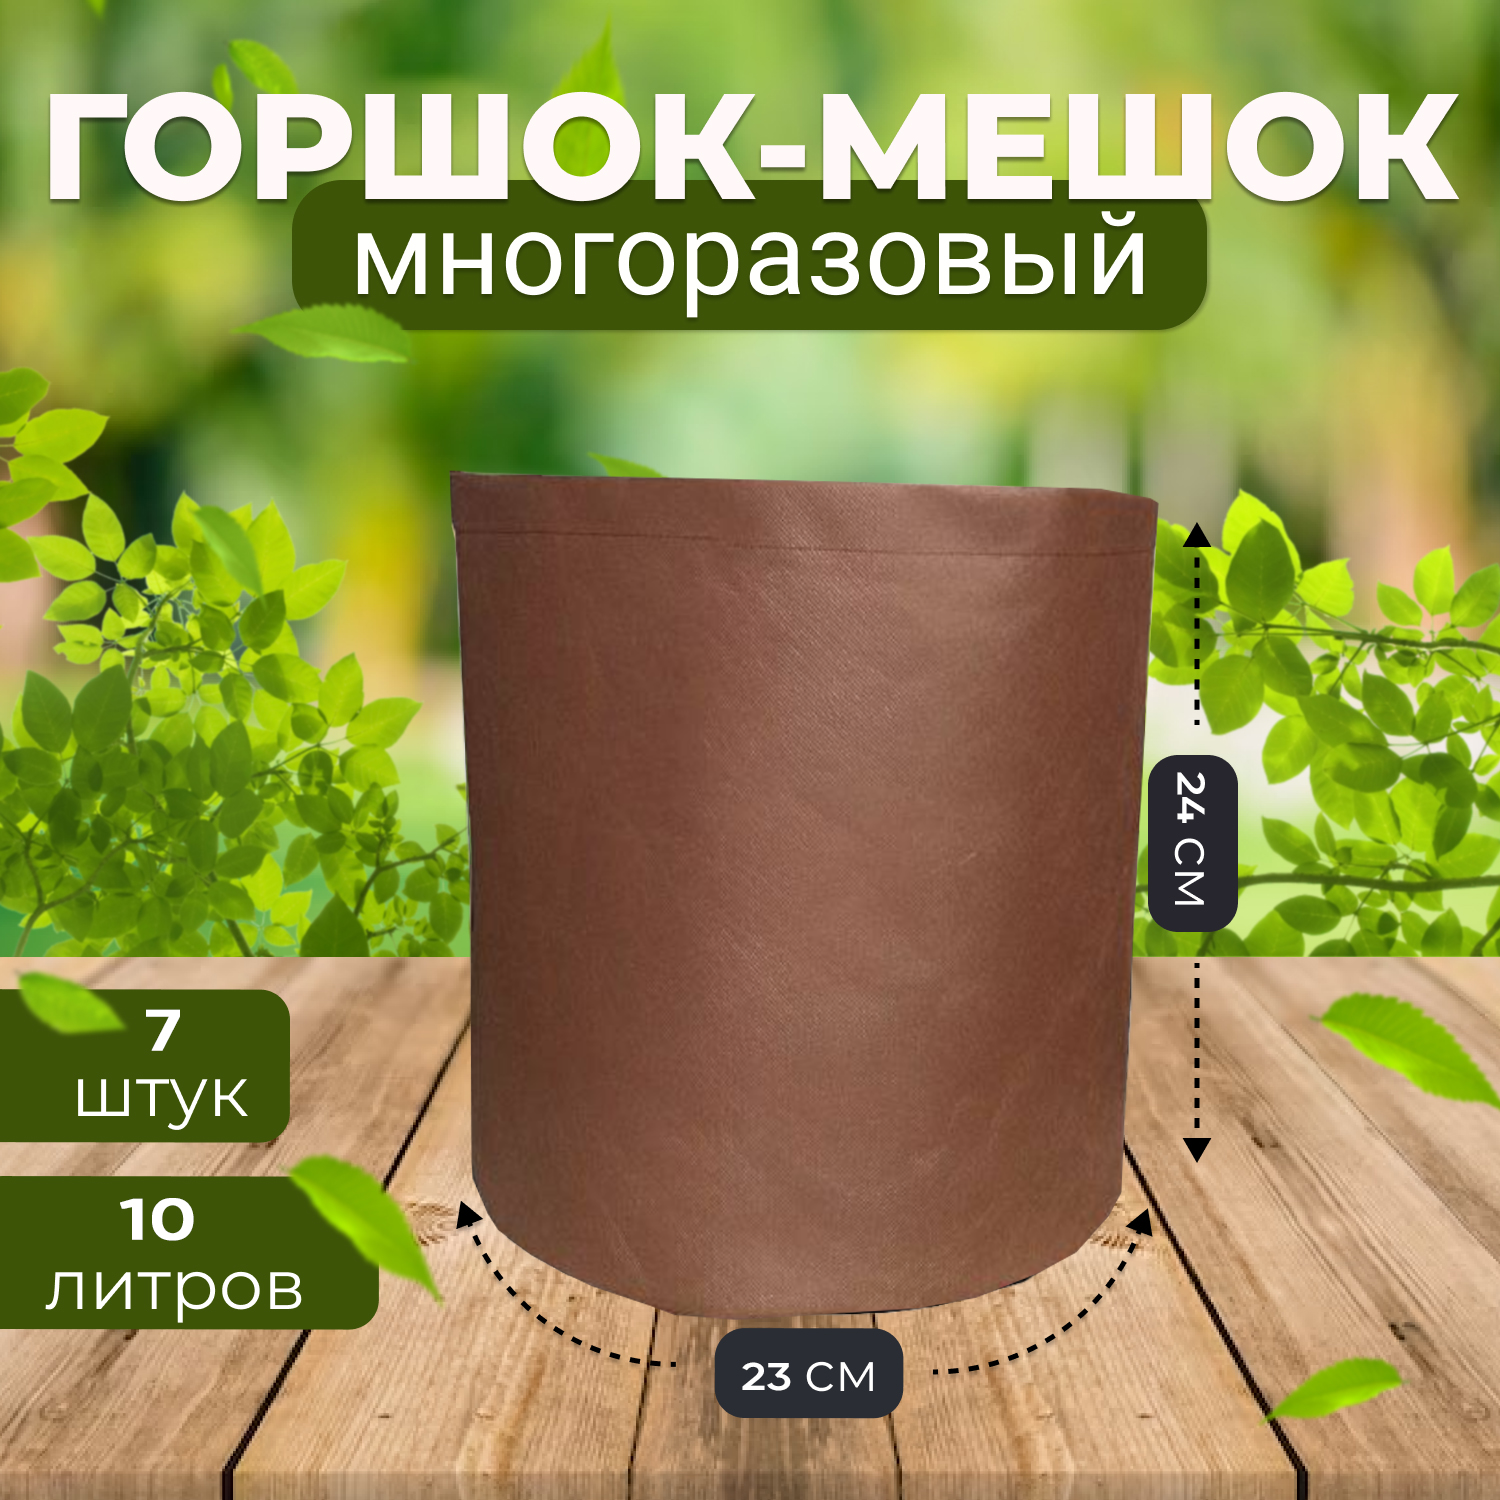 Мешок горшок текстильный из спанбонда Grower Green 10_litrov-Brown_7 10 литров, 7шт.